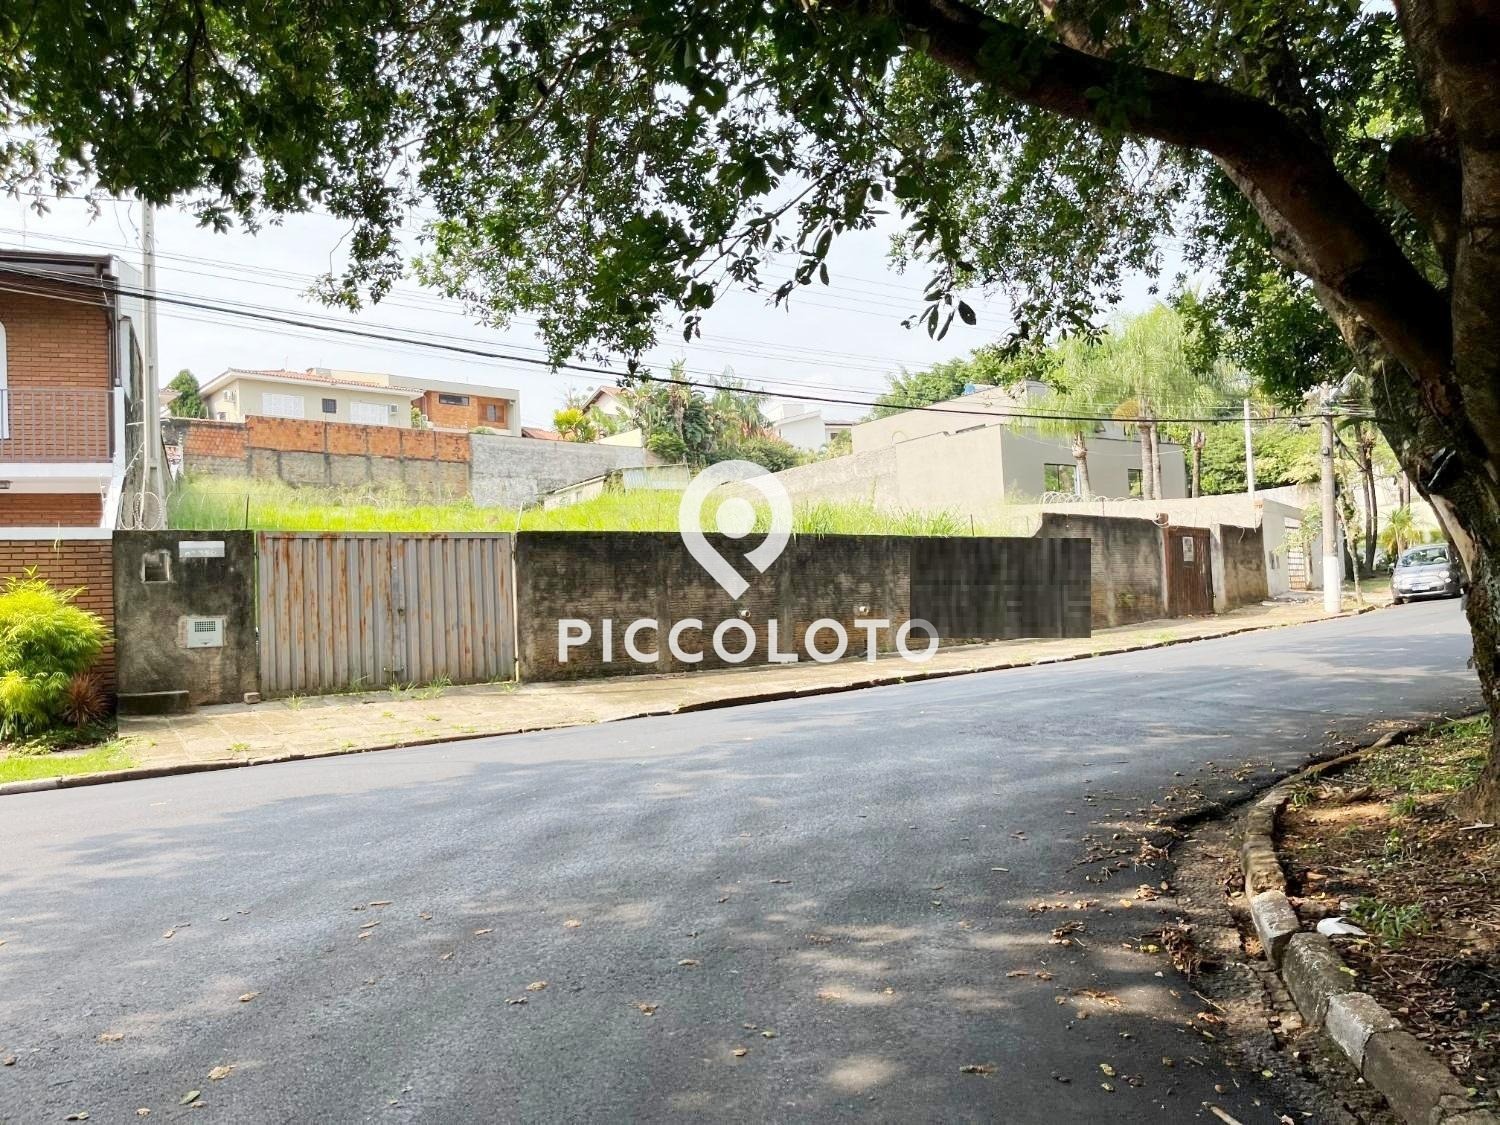 Piccoloto -Terreno à venda no Parque Nova Campinas em Campinas